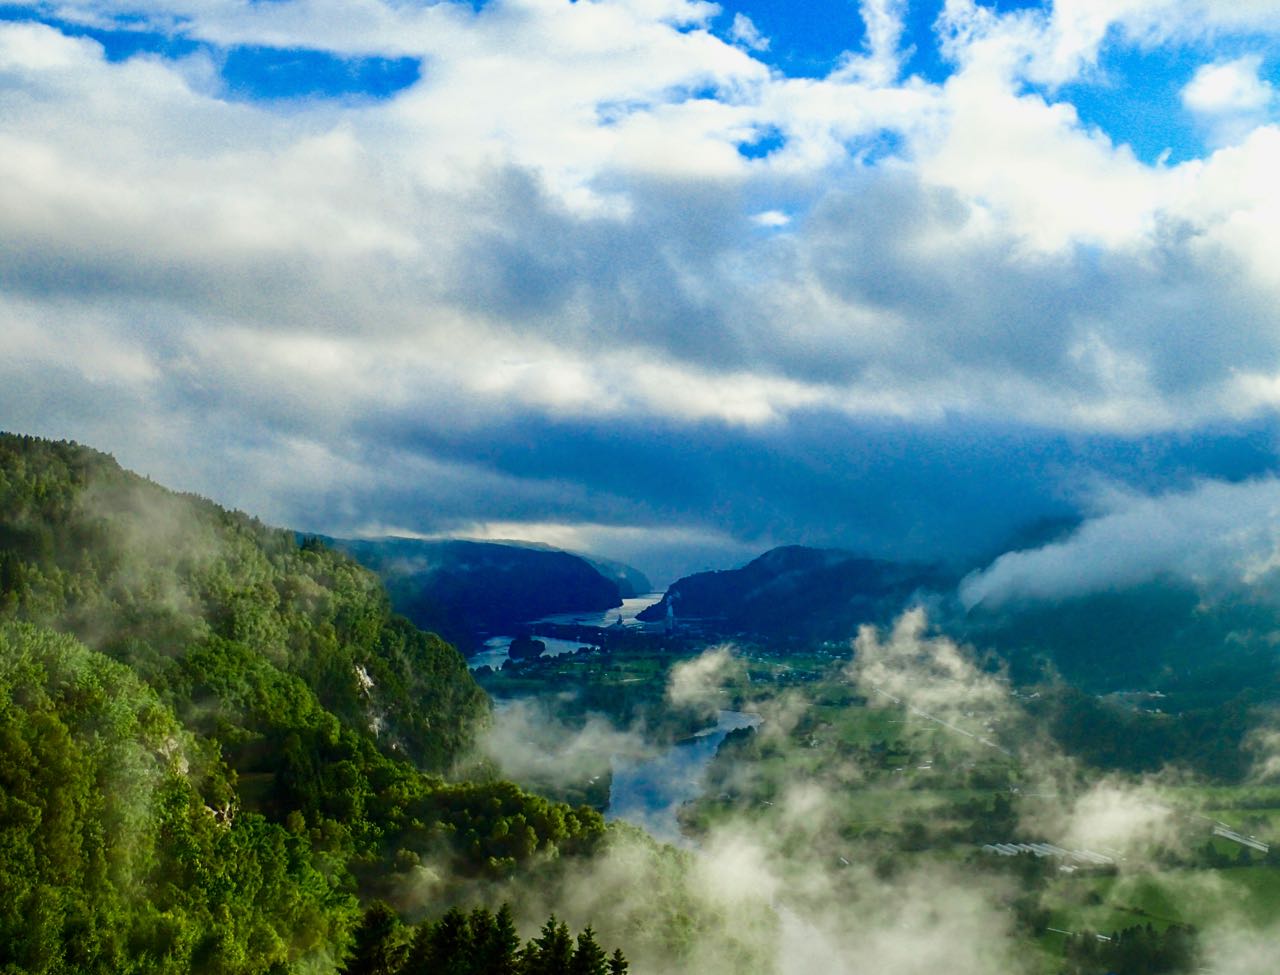 Reiserute bilferie Norge Kvinesdal utsikt